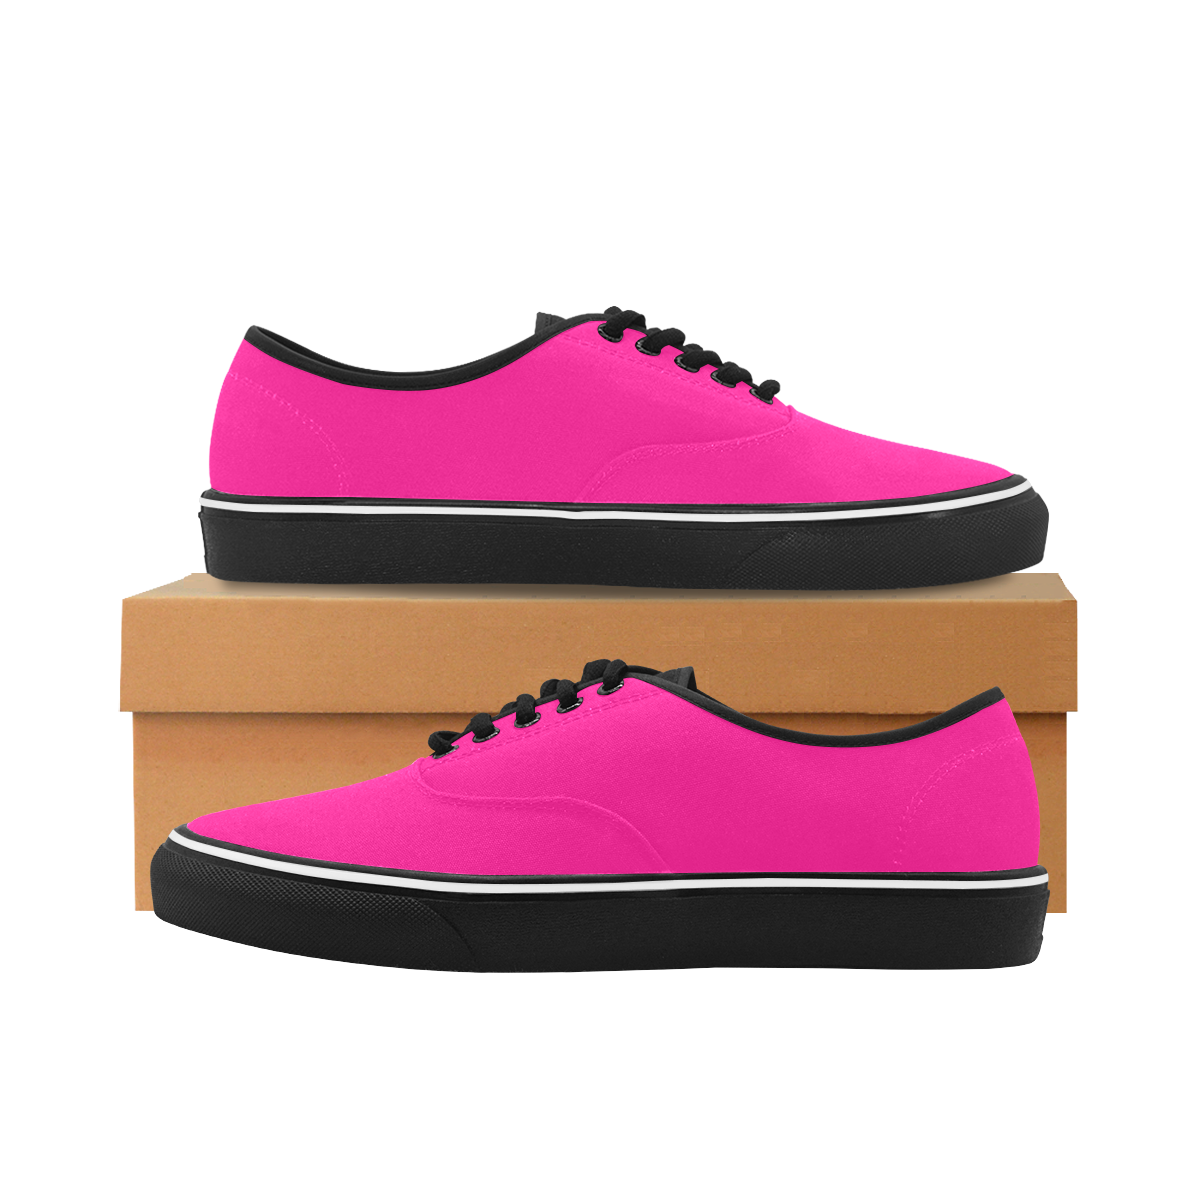 color deep pink Classic Men's Canvas Low Top Shoes (Model E001-4)